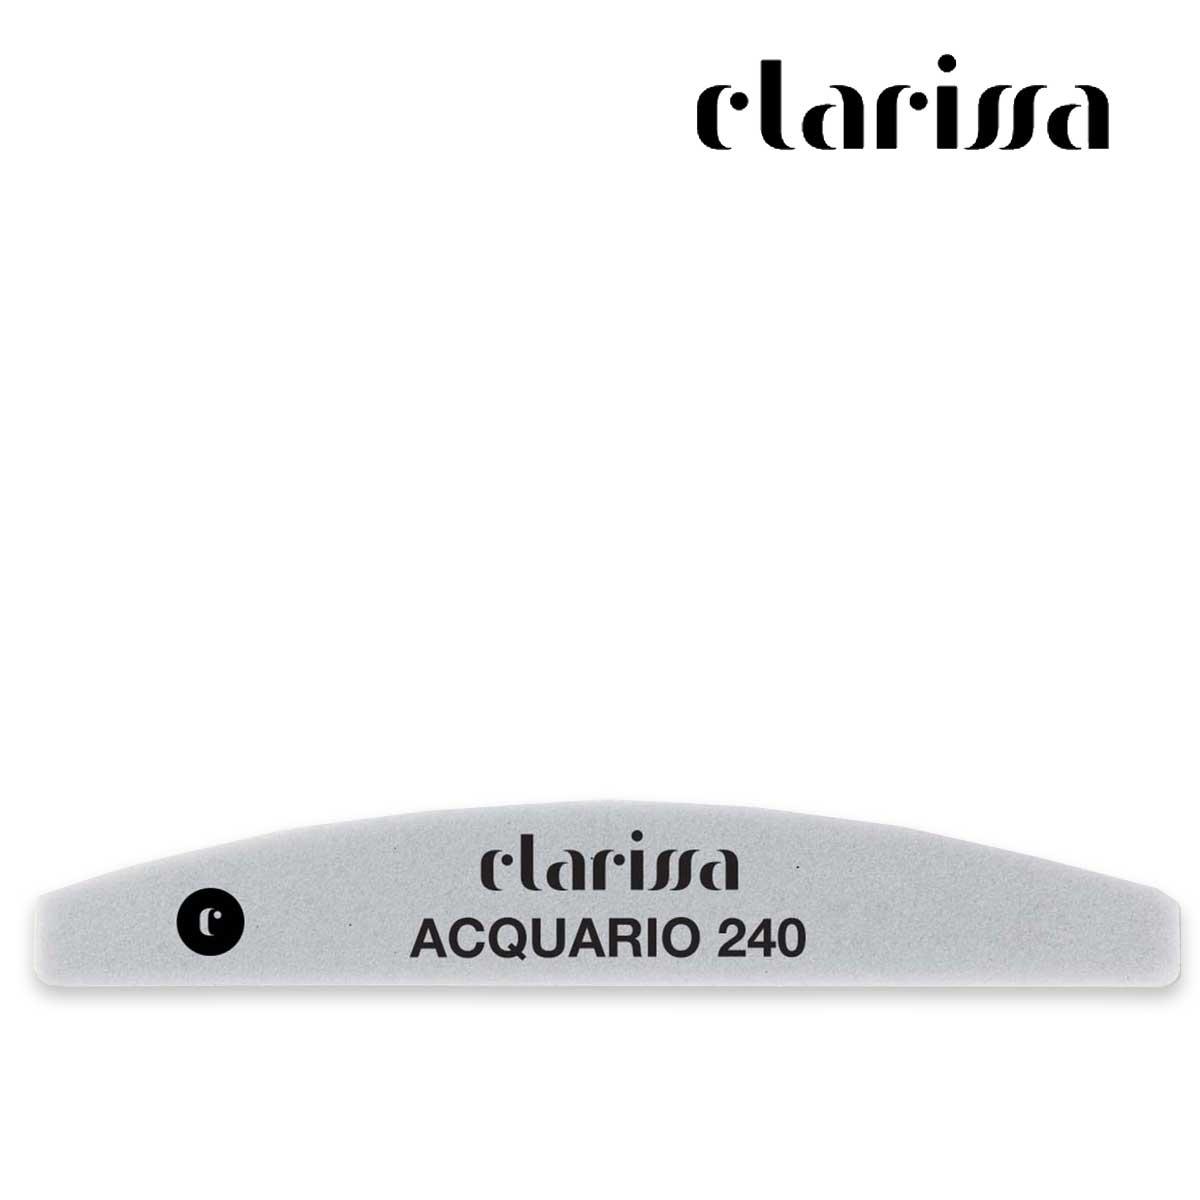 Clarissa lima style acquario 240